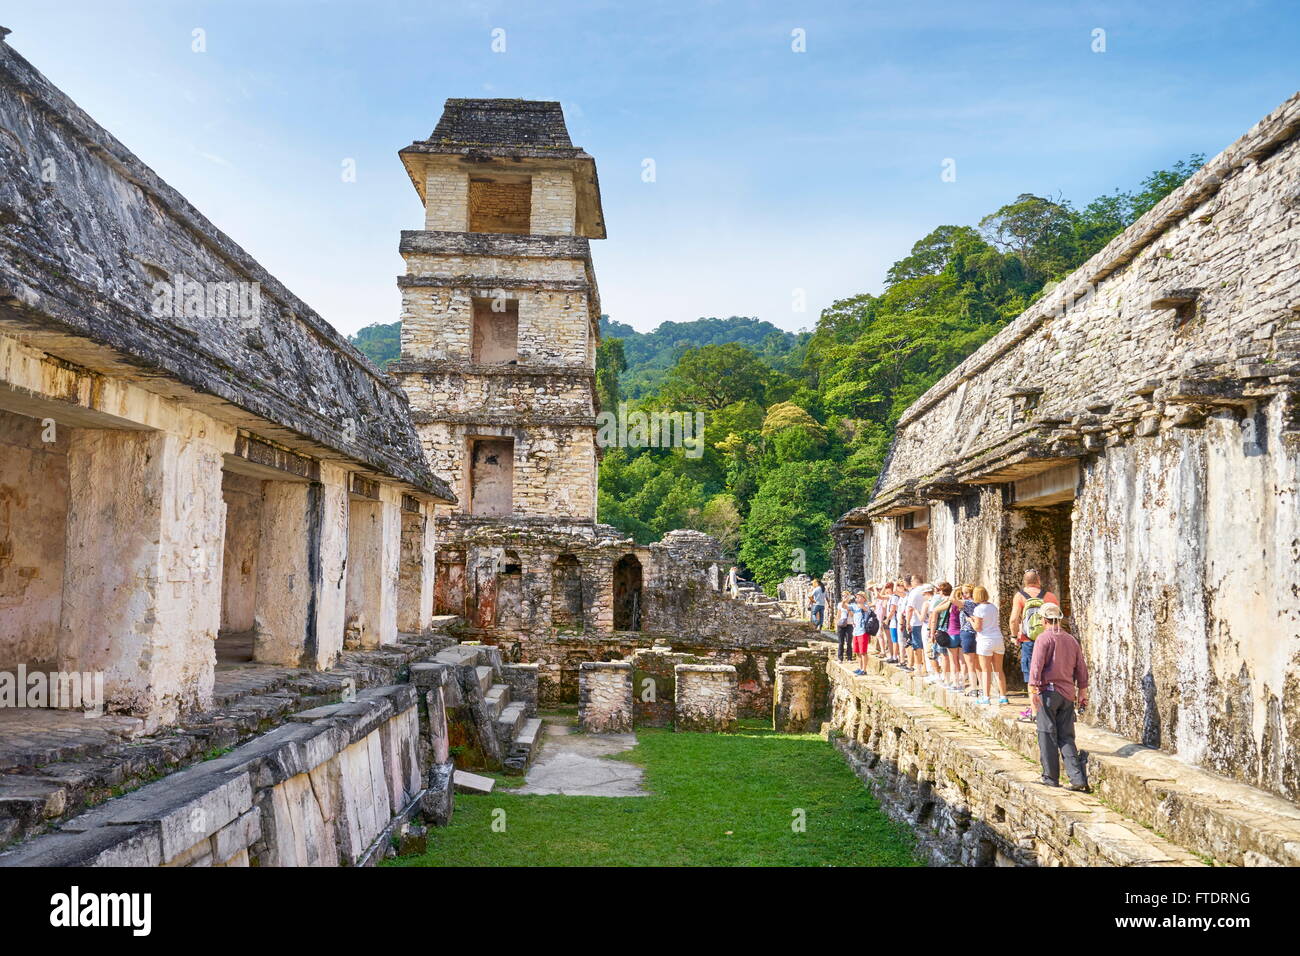 Ruine de Maya Palace, Palenque, site archéologique de Palenque, Chiapas, Mexique Banque D'Images